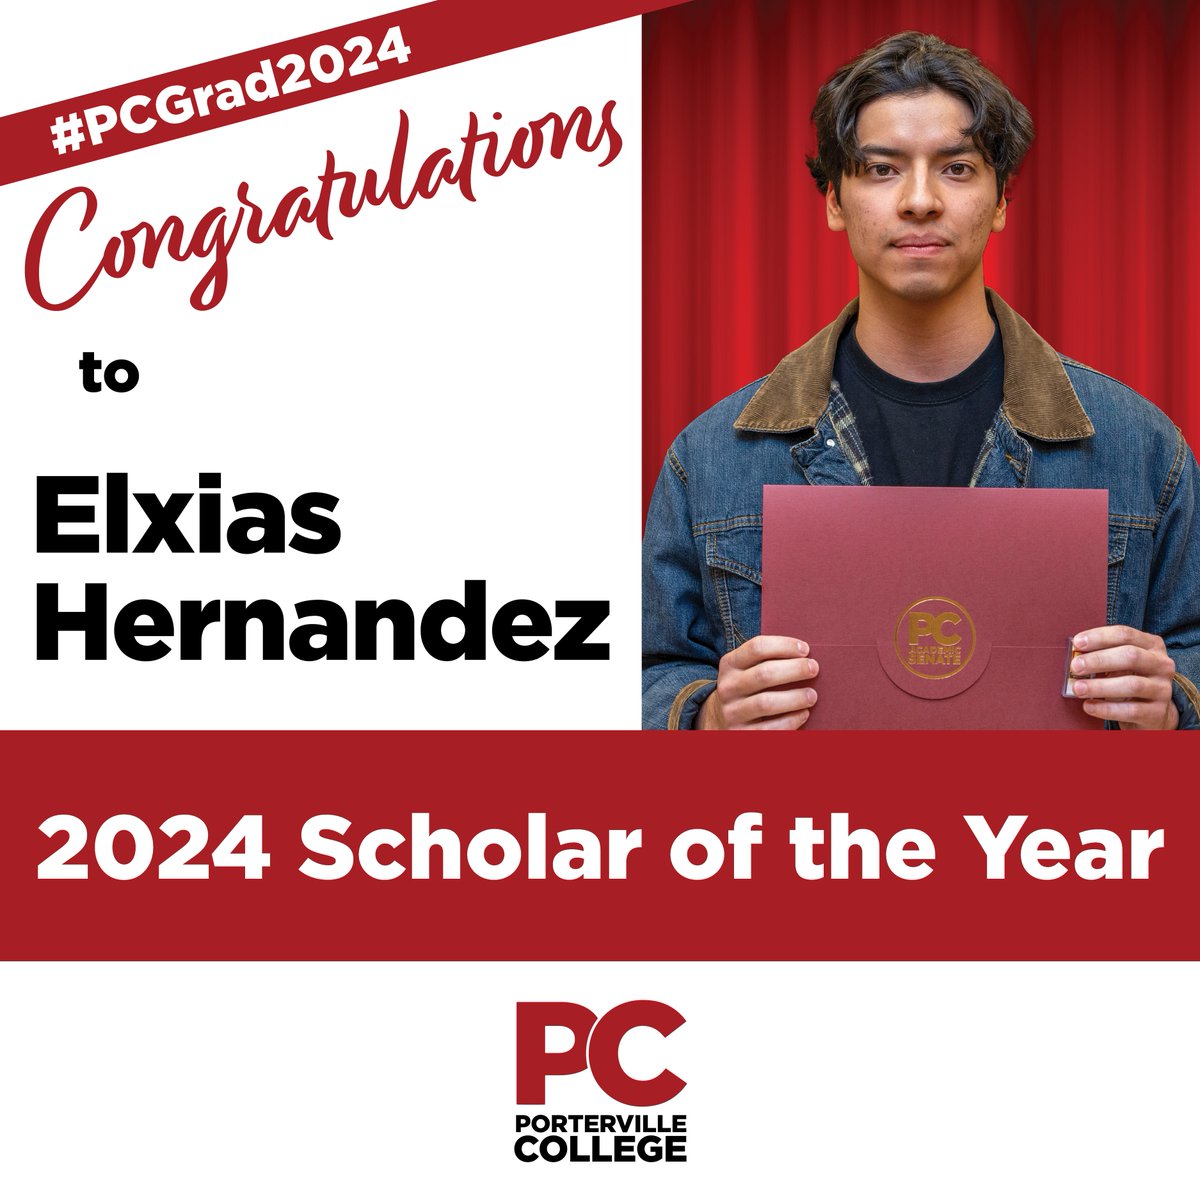 Congratulations to Elxias Hernandez -- 2024 Scholar of the Year! #PCGrad2024 #PCStudentSuccess